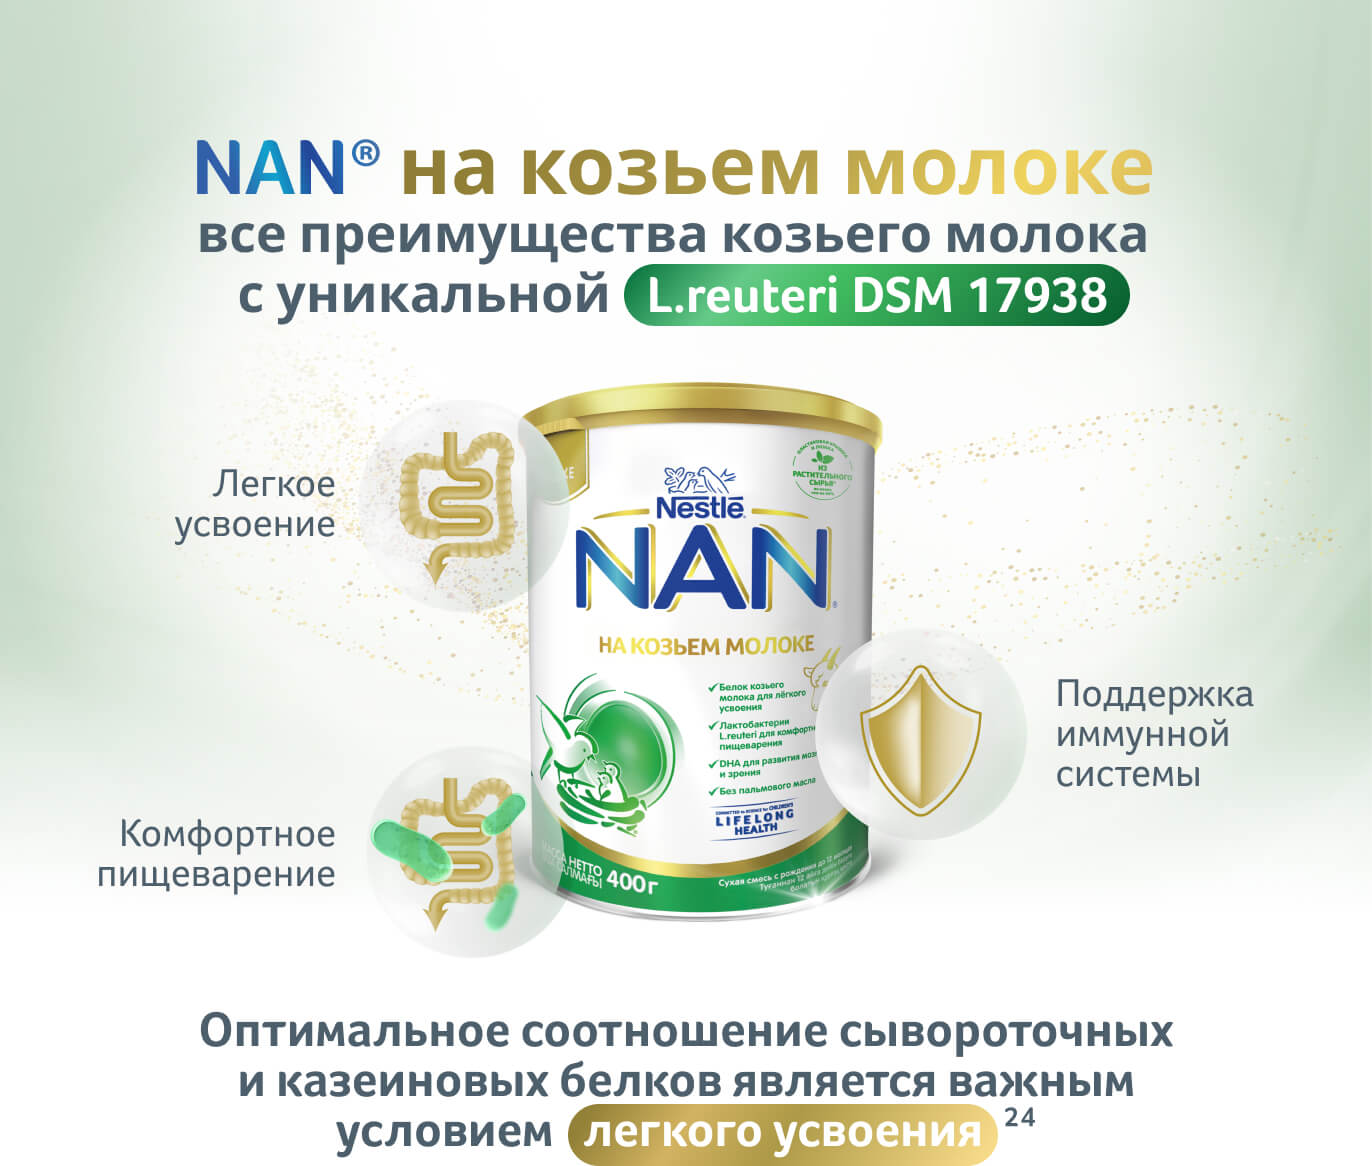 Преимущества NAN® на козьем молоке для комфортного пищеварения